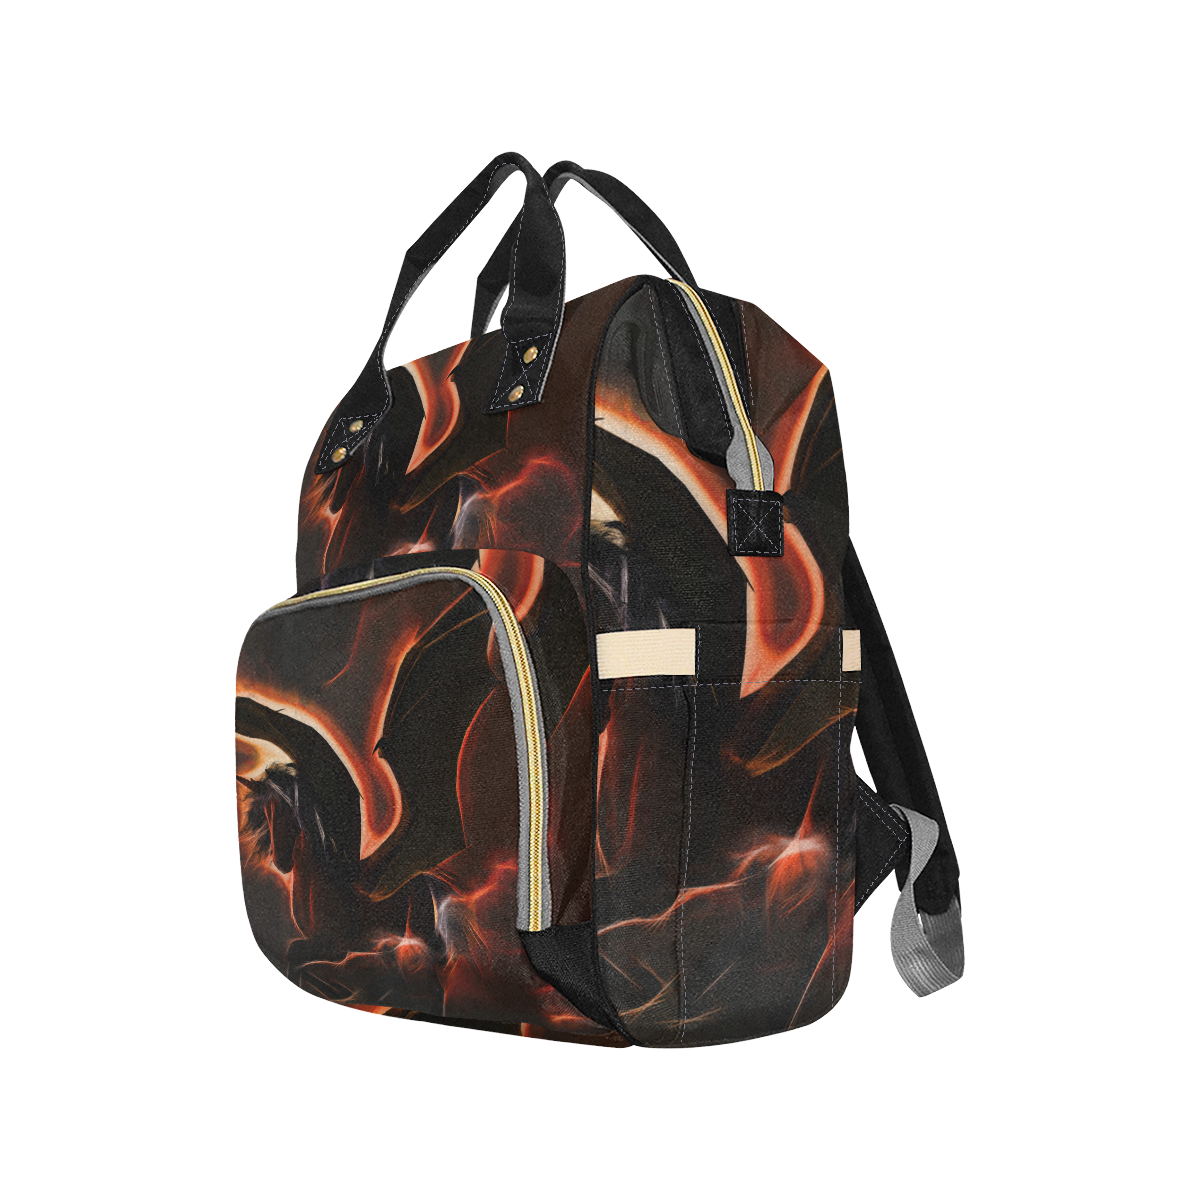 Awesmoe dark unicorn Multi-Function Diaper Backpack/Diaper Bag (Model 1688)